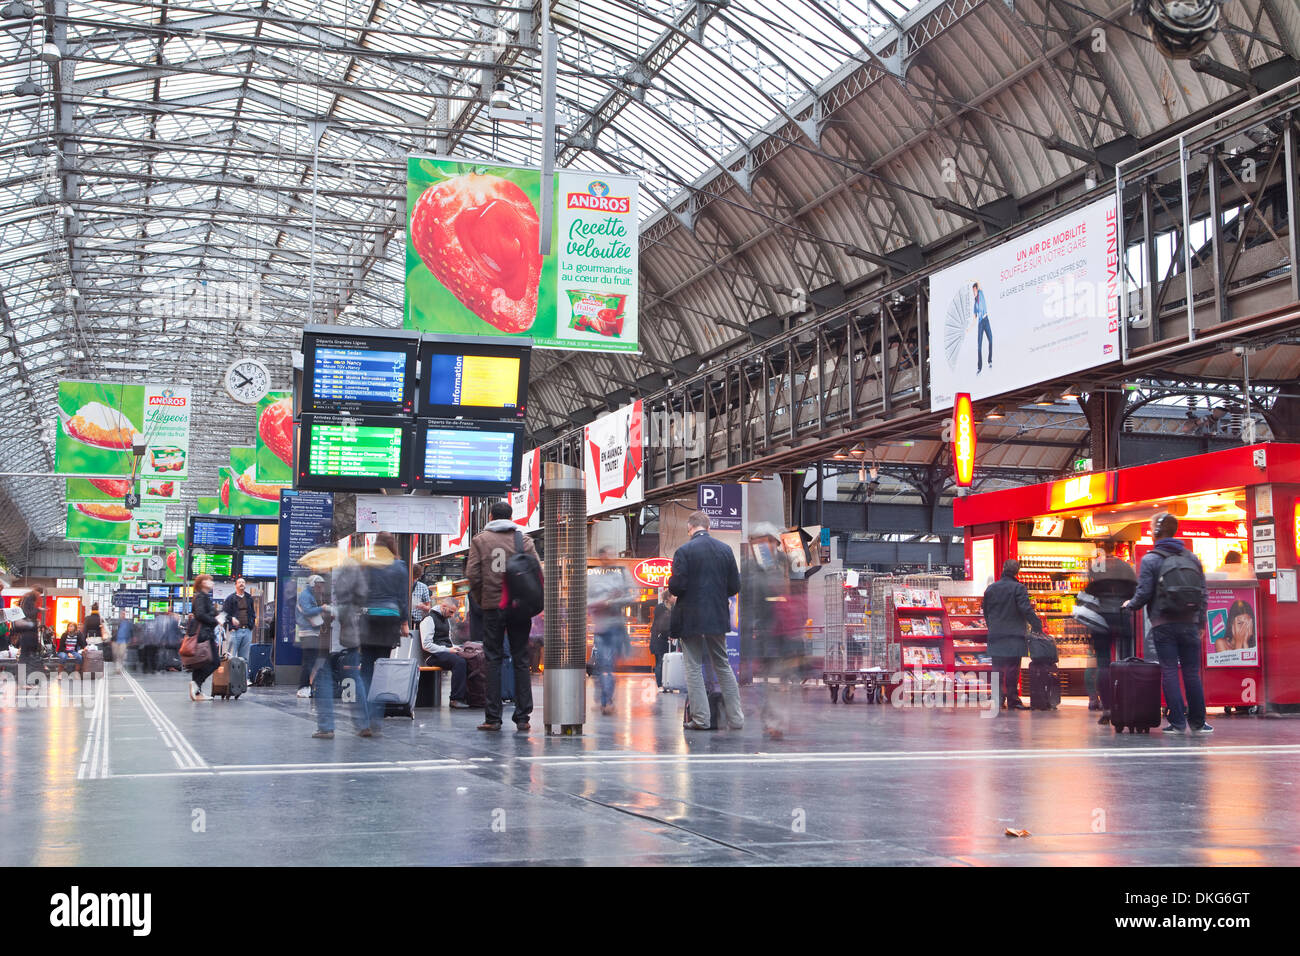 The morning rush-hour in Paris Gare de l'Est station, Paris, France, Europe Stock Photo